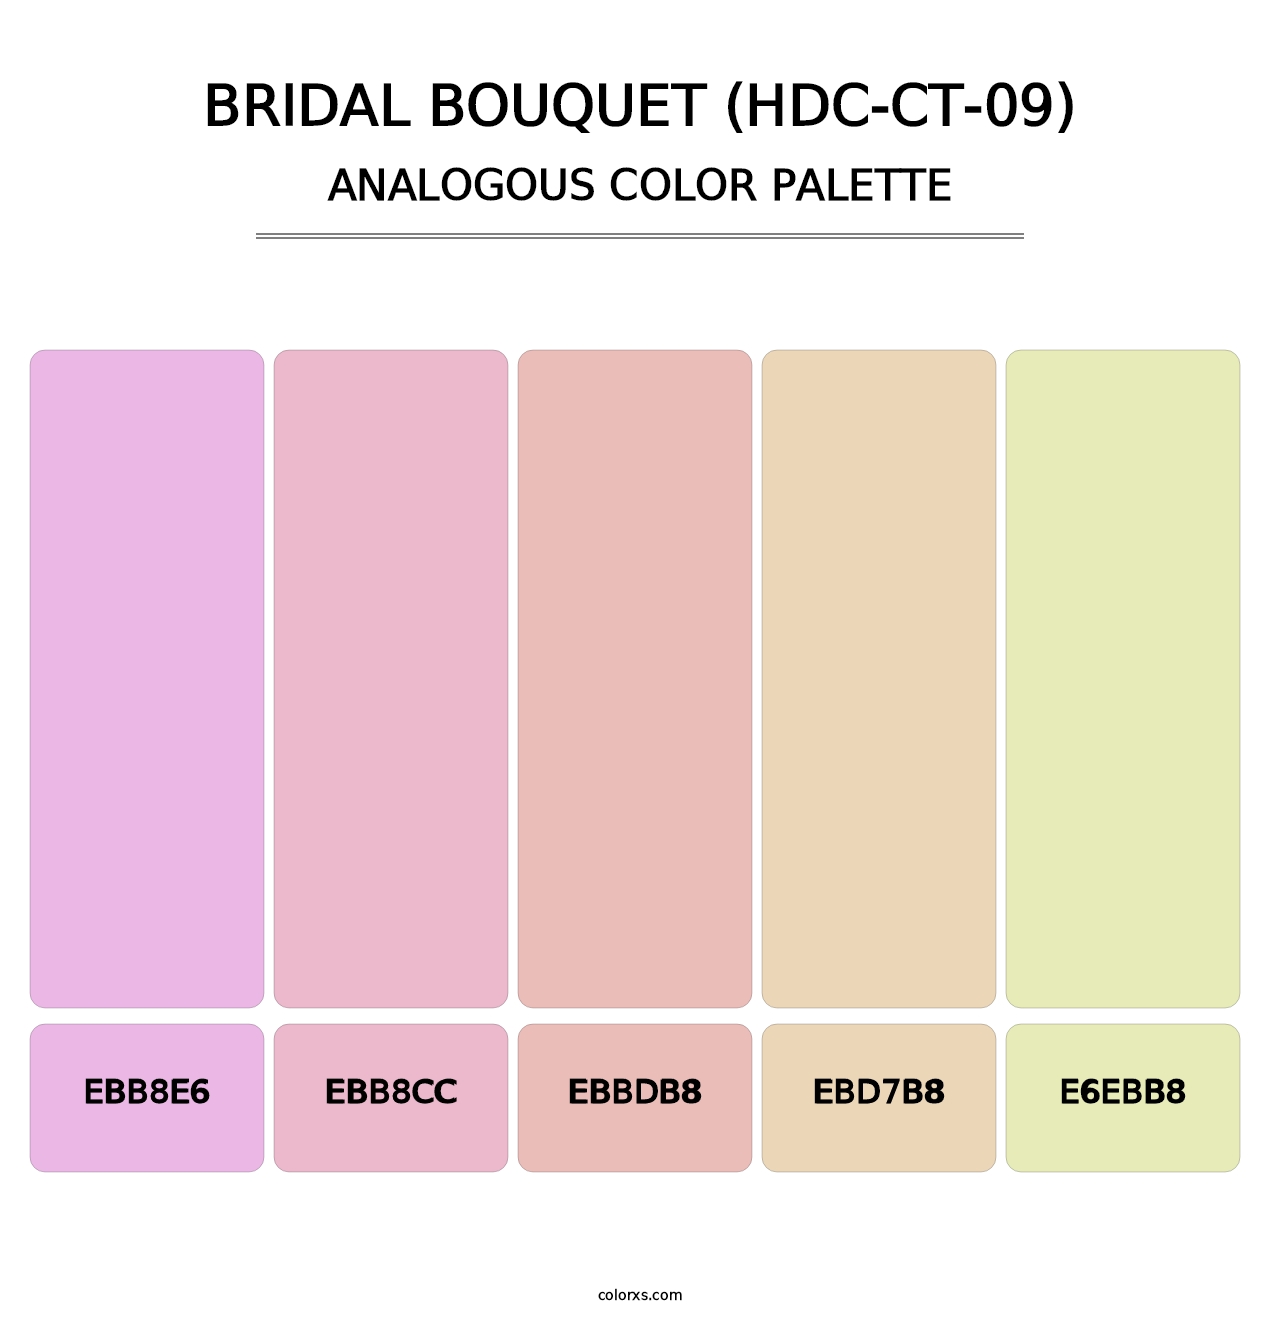 Bridal Bouquet (HDC-CT-09) - Analogous Color Palette